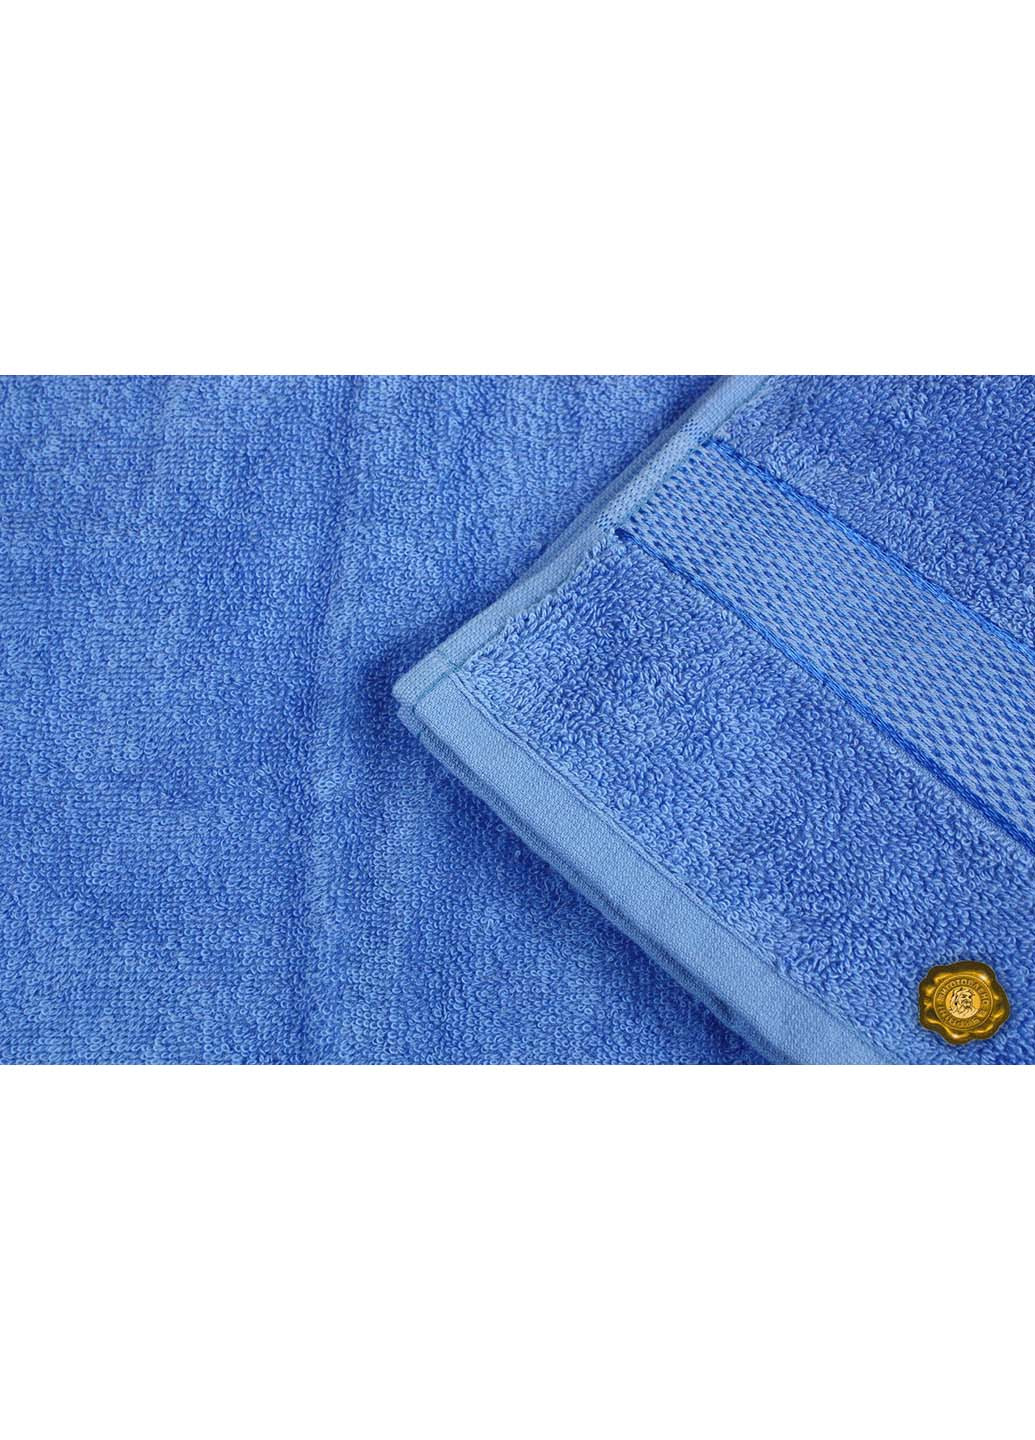 Еней-Плюс полотенце махровое бс0008 40х70 синий производство - Украина